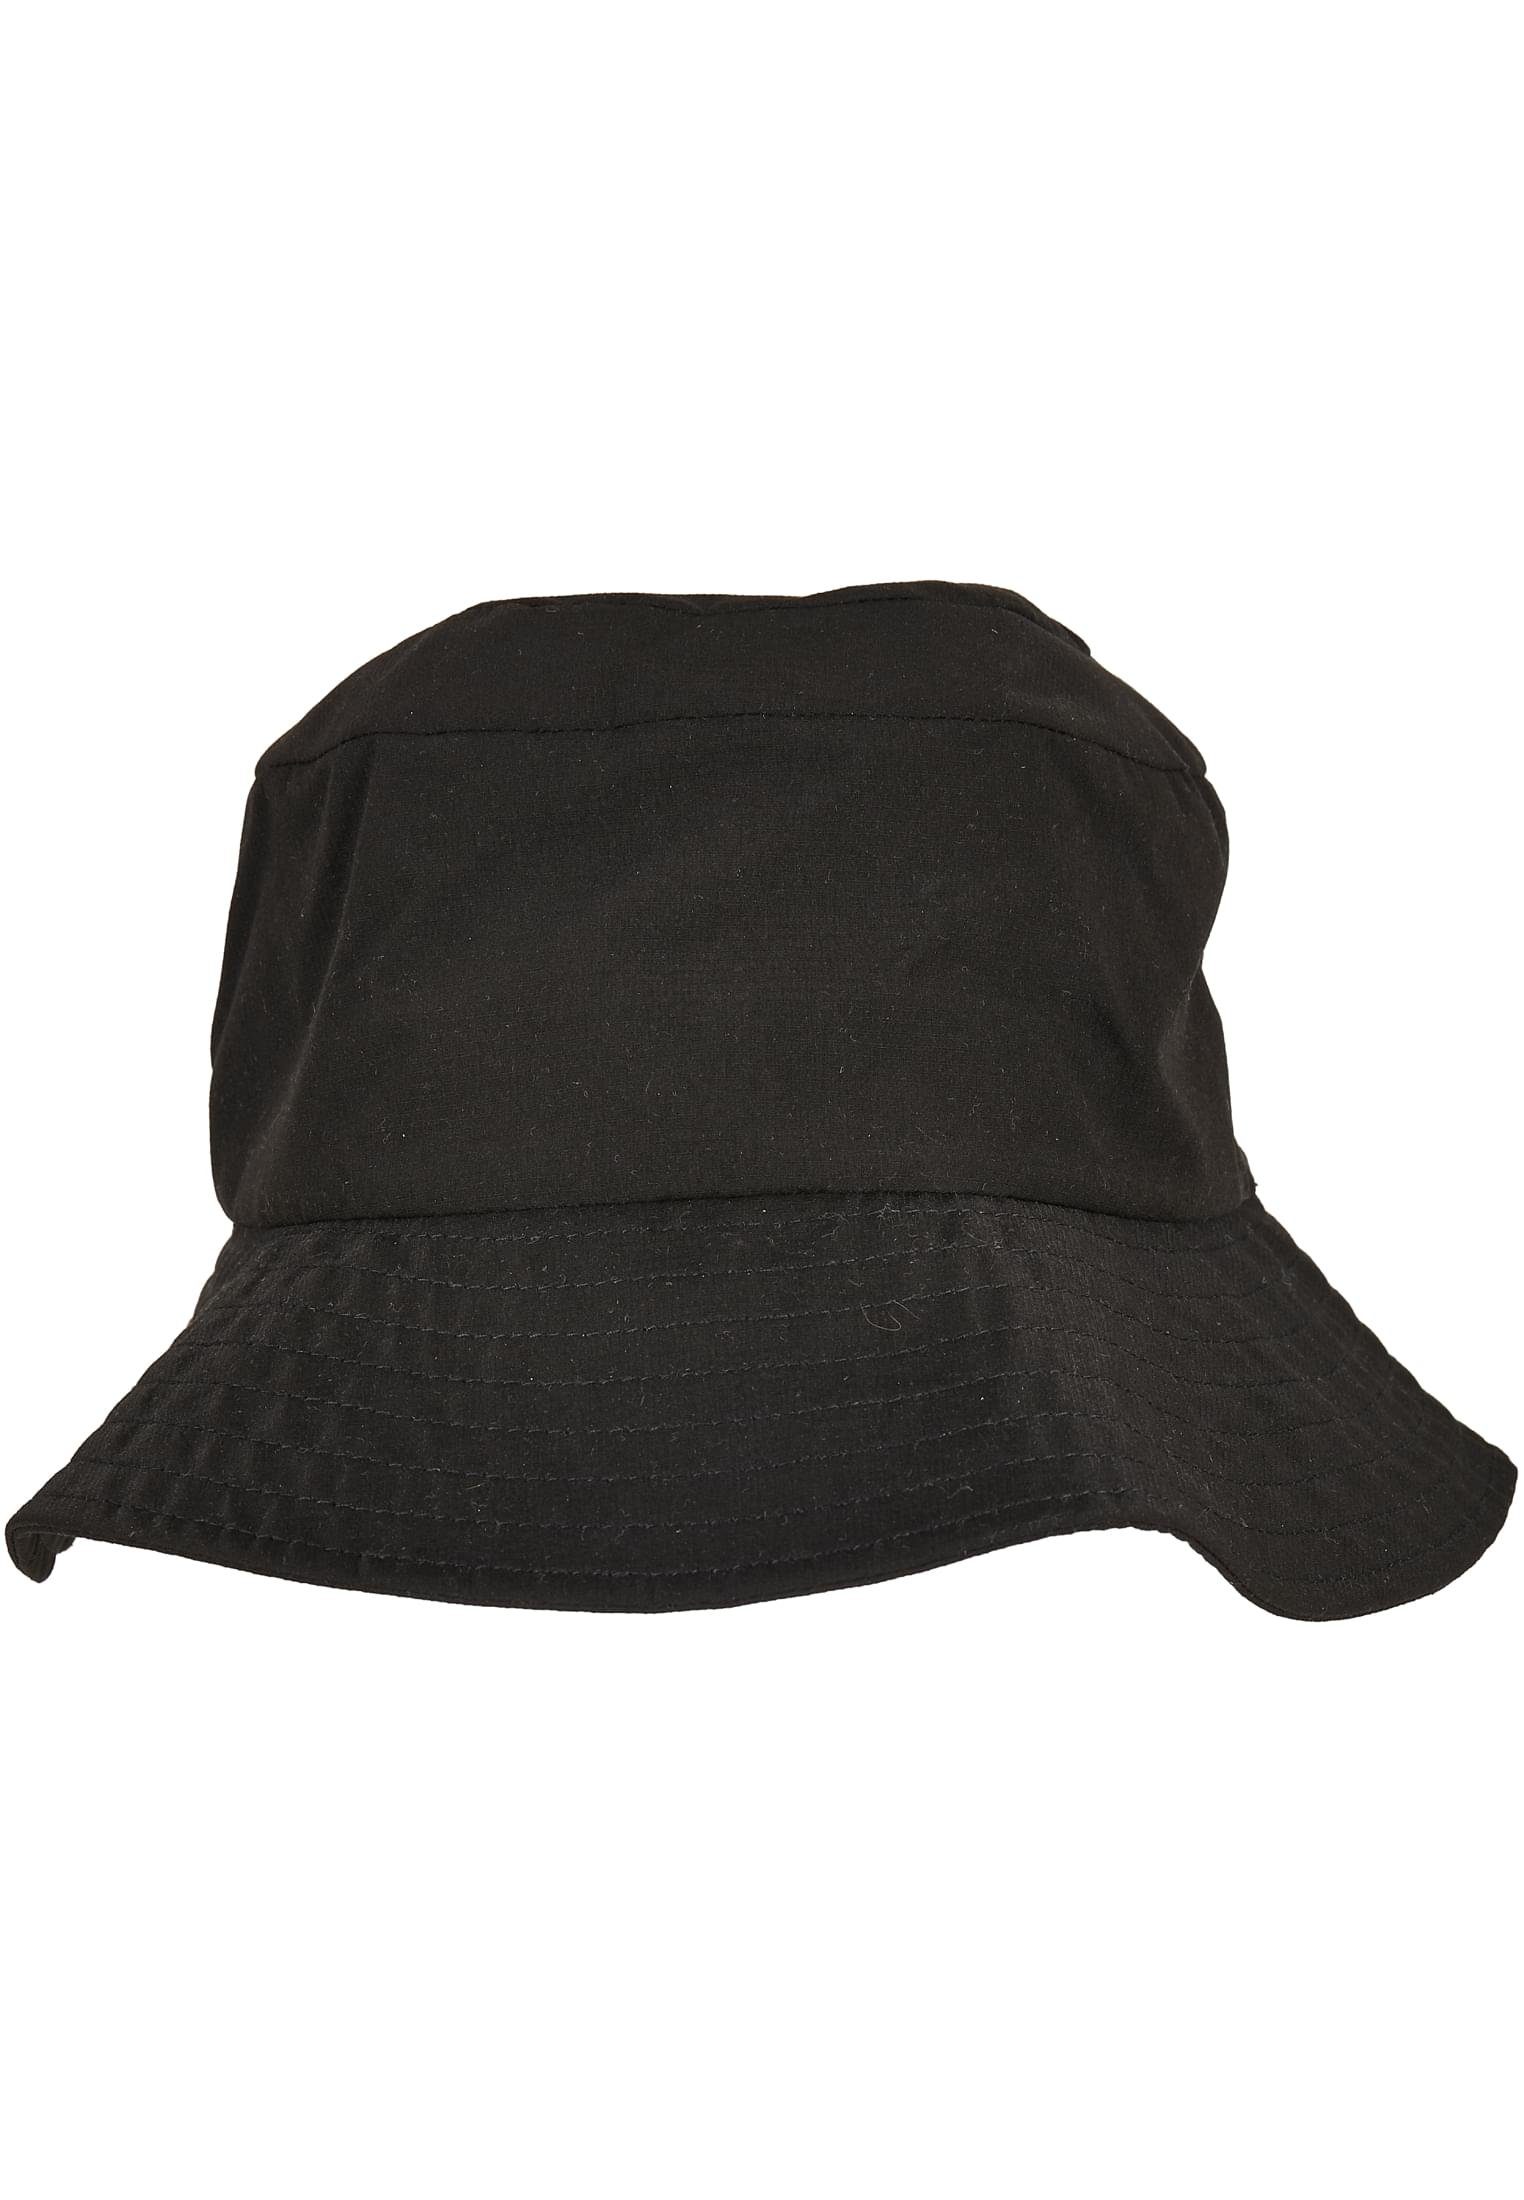 Accessoires Elastic Flex Cap Adjuster black Hat Flexfit Bucket